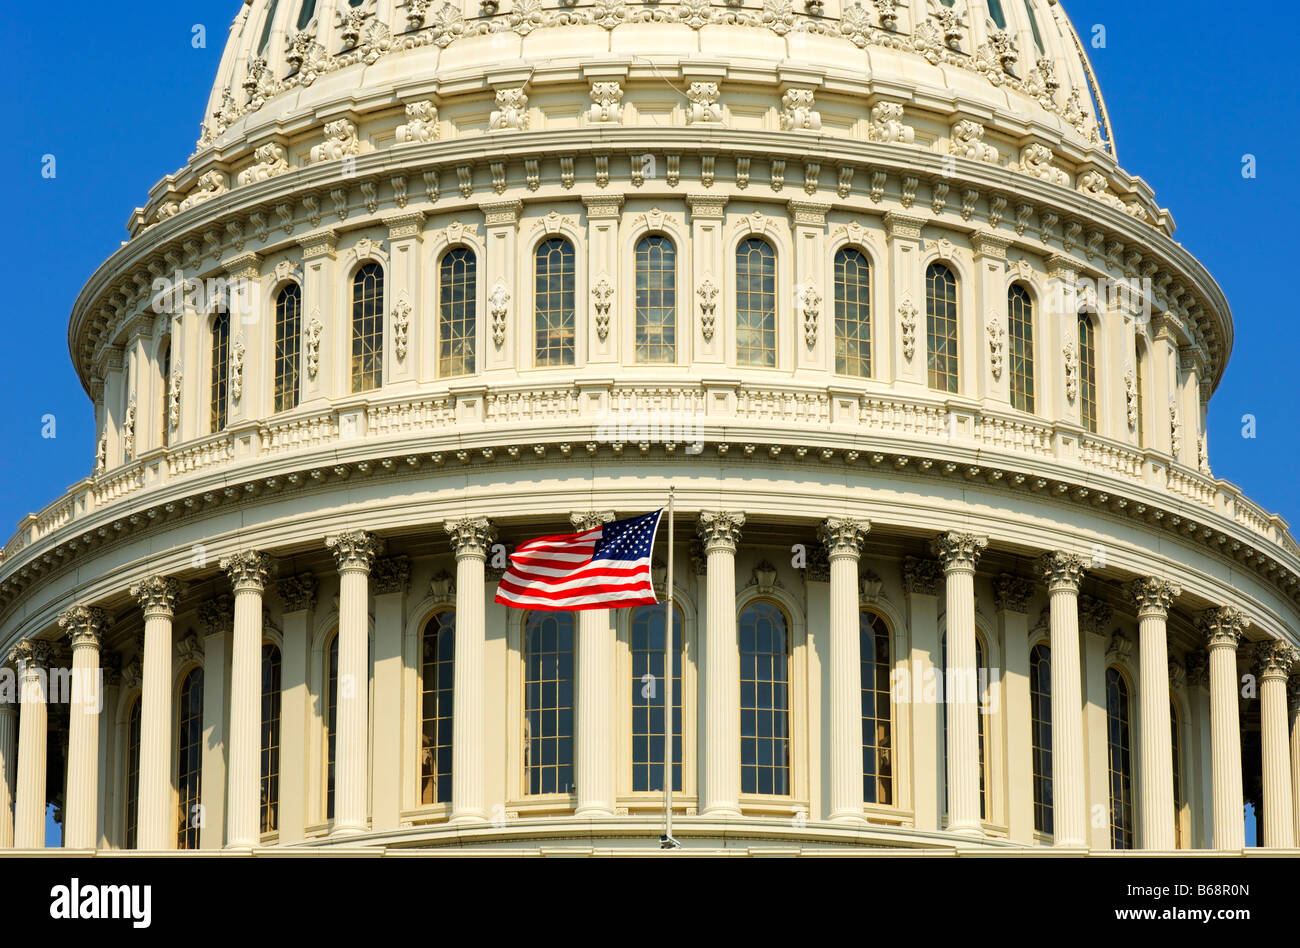 Détail de la coupole centrale de la United States Capitol avec les Étoiles et bandes drapeau, Washington, DC, USA. Banque D'Images